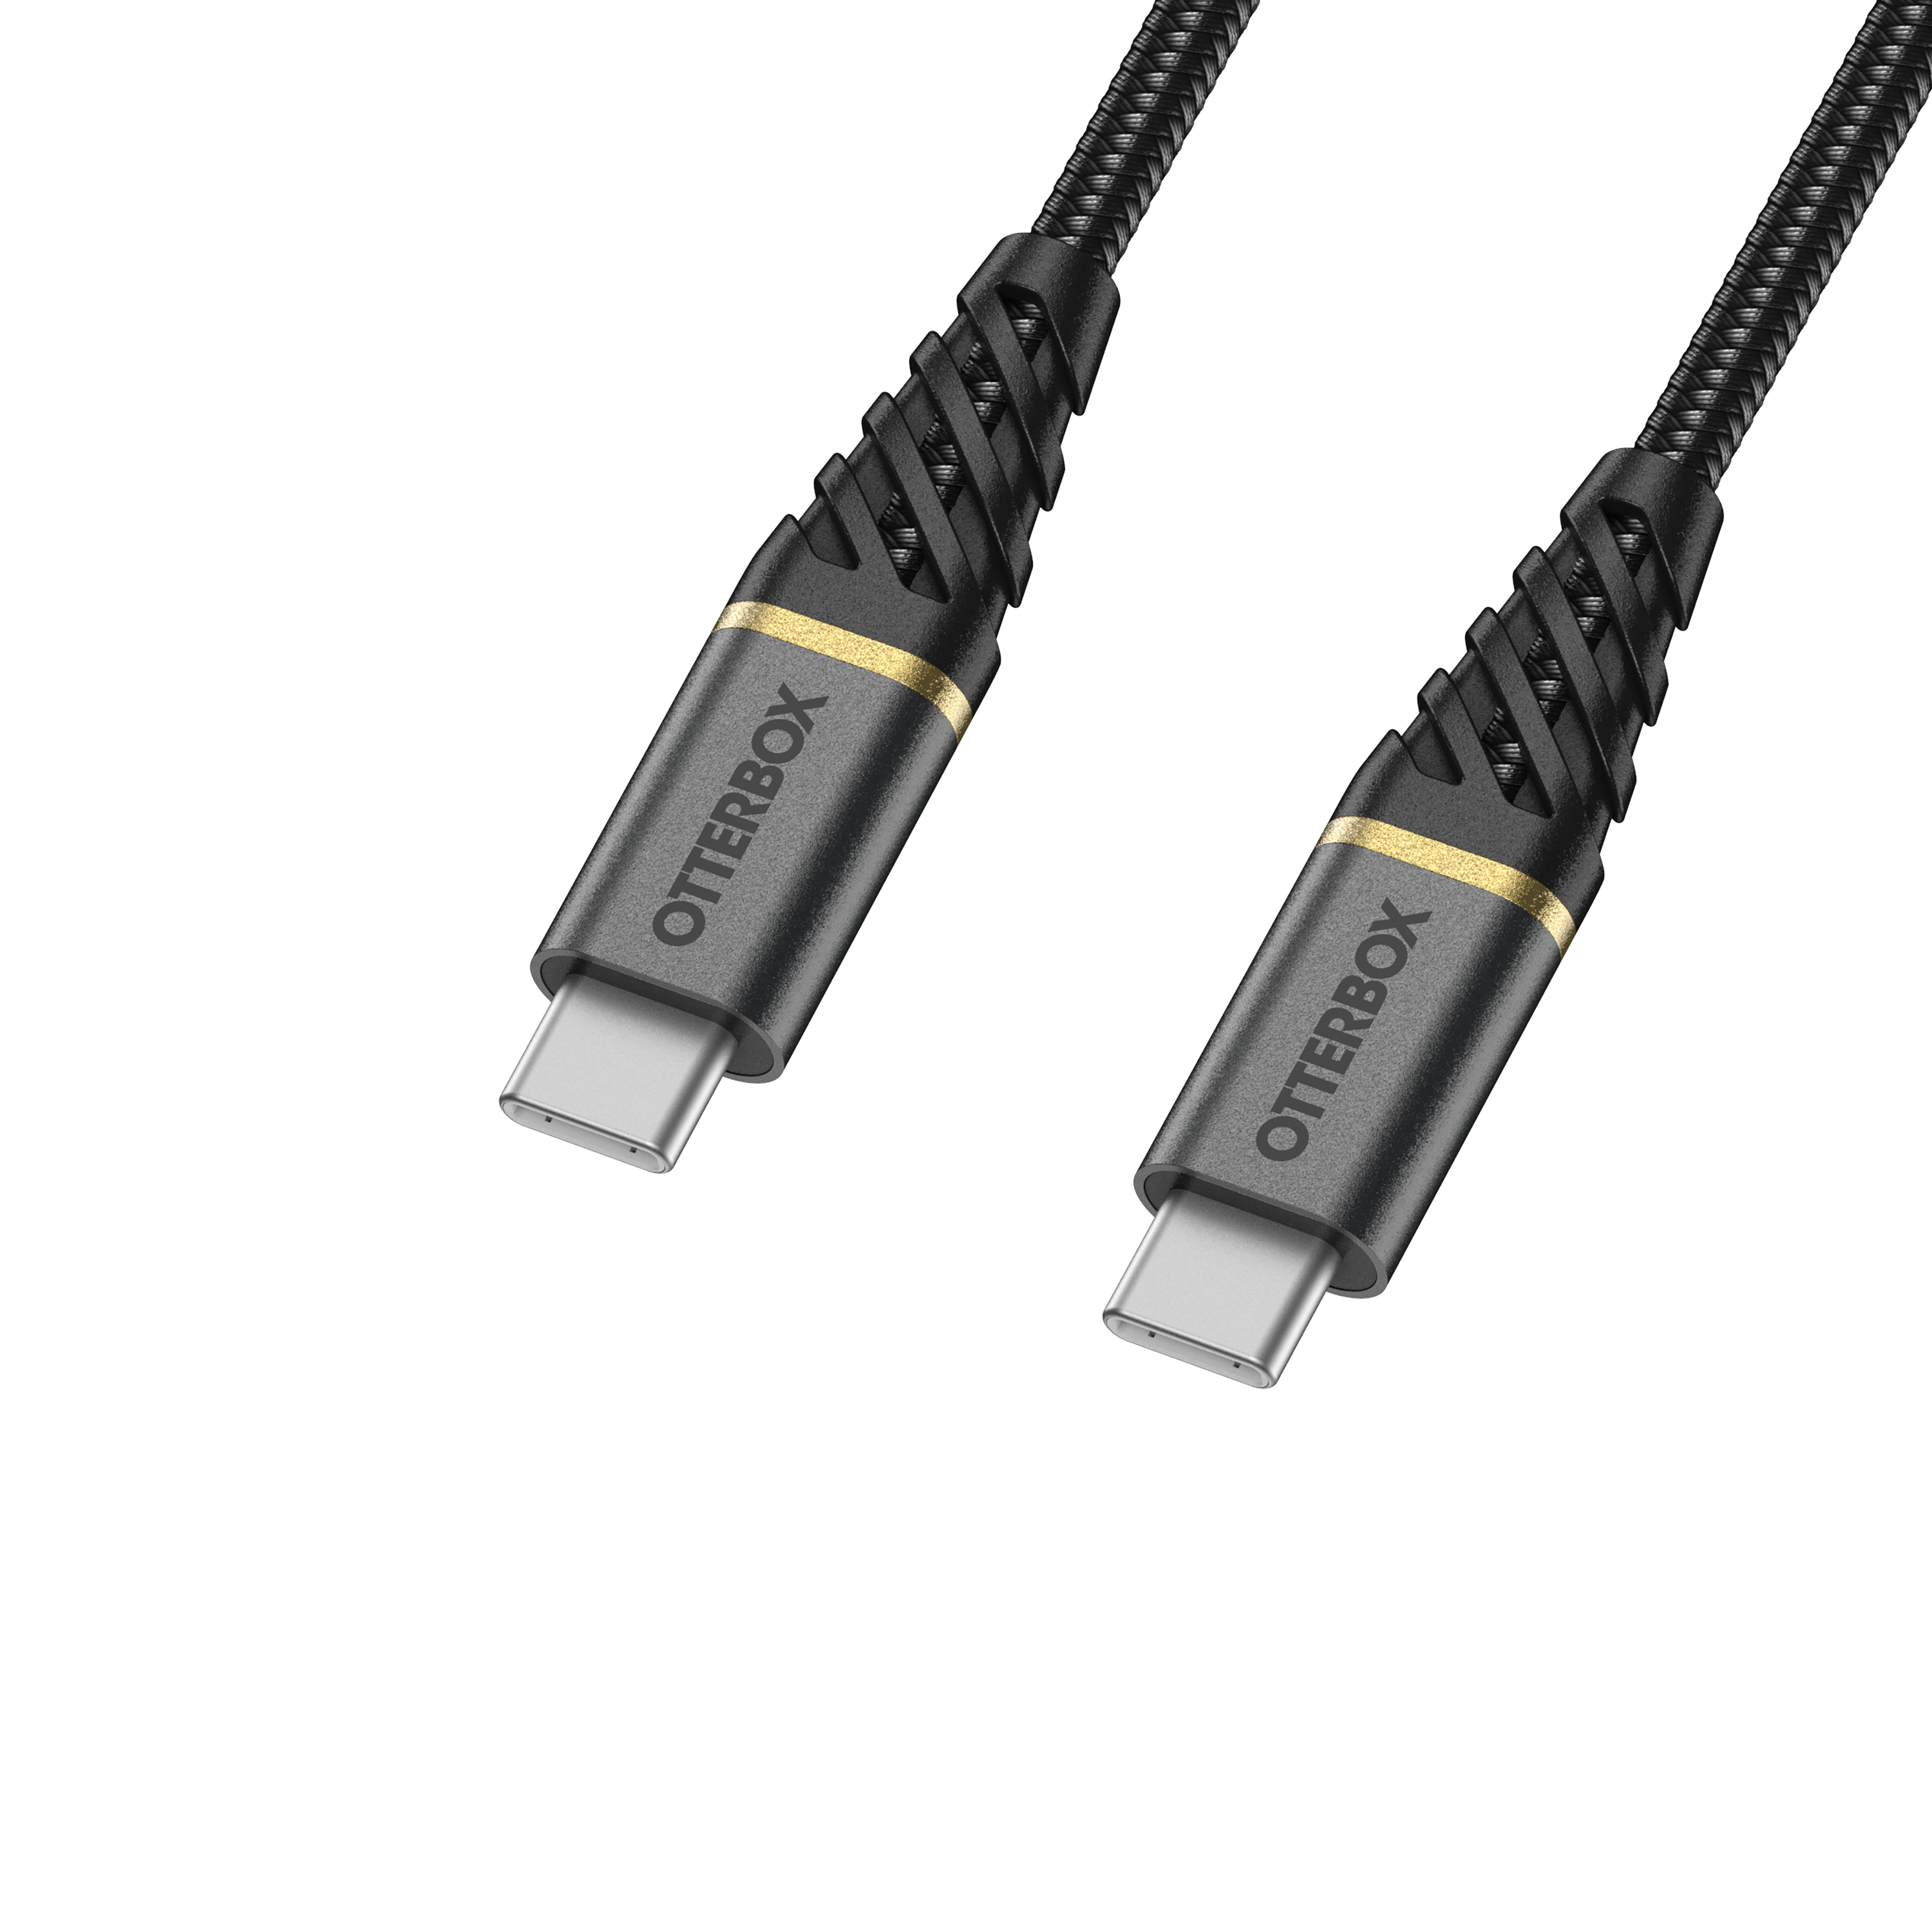 Câble USB type C vers micro USB B - nylon tressé 2m => Livraison